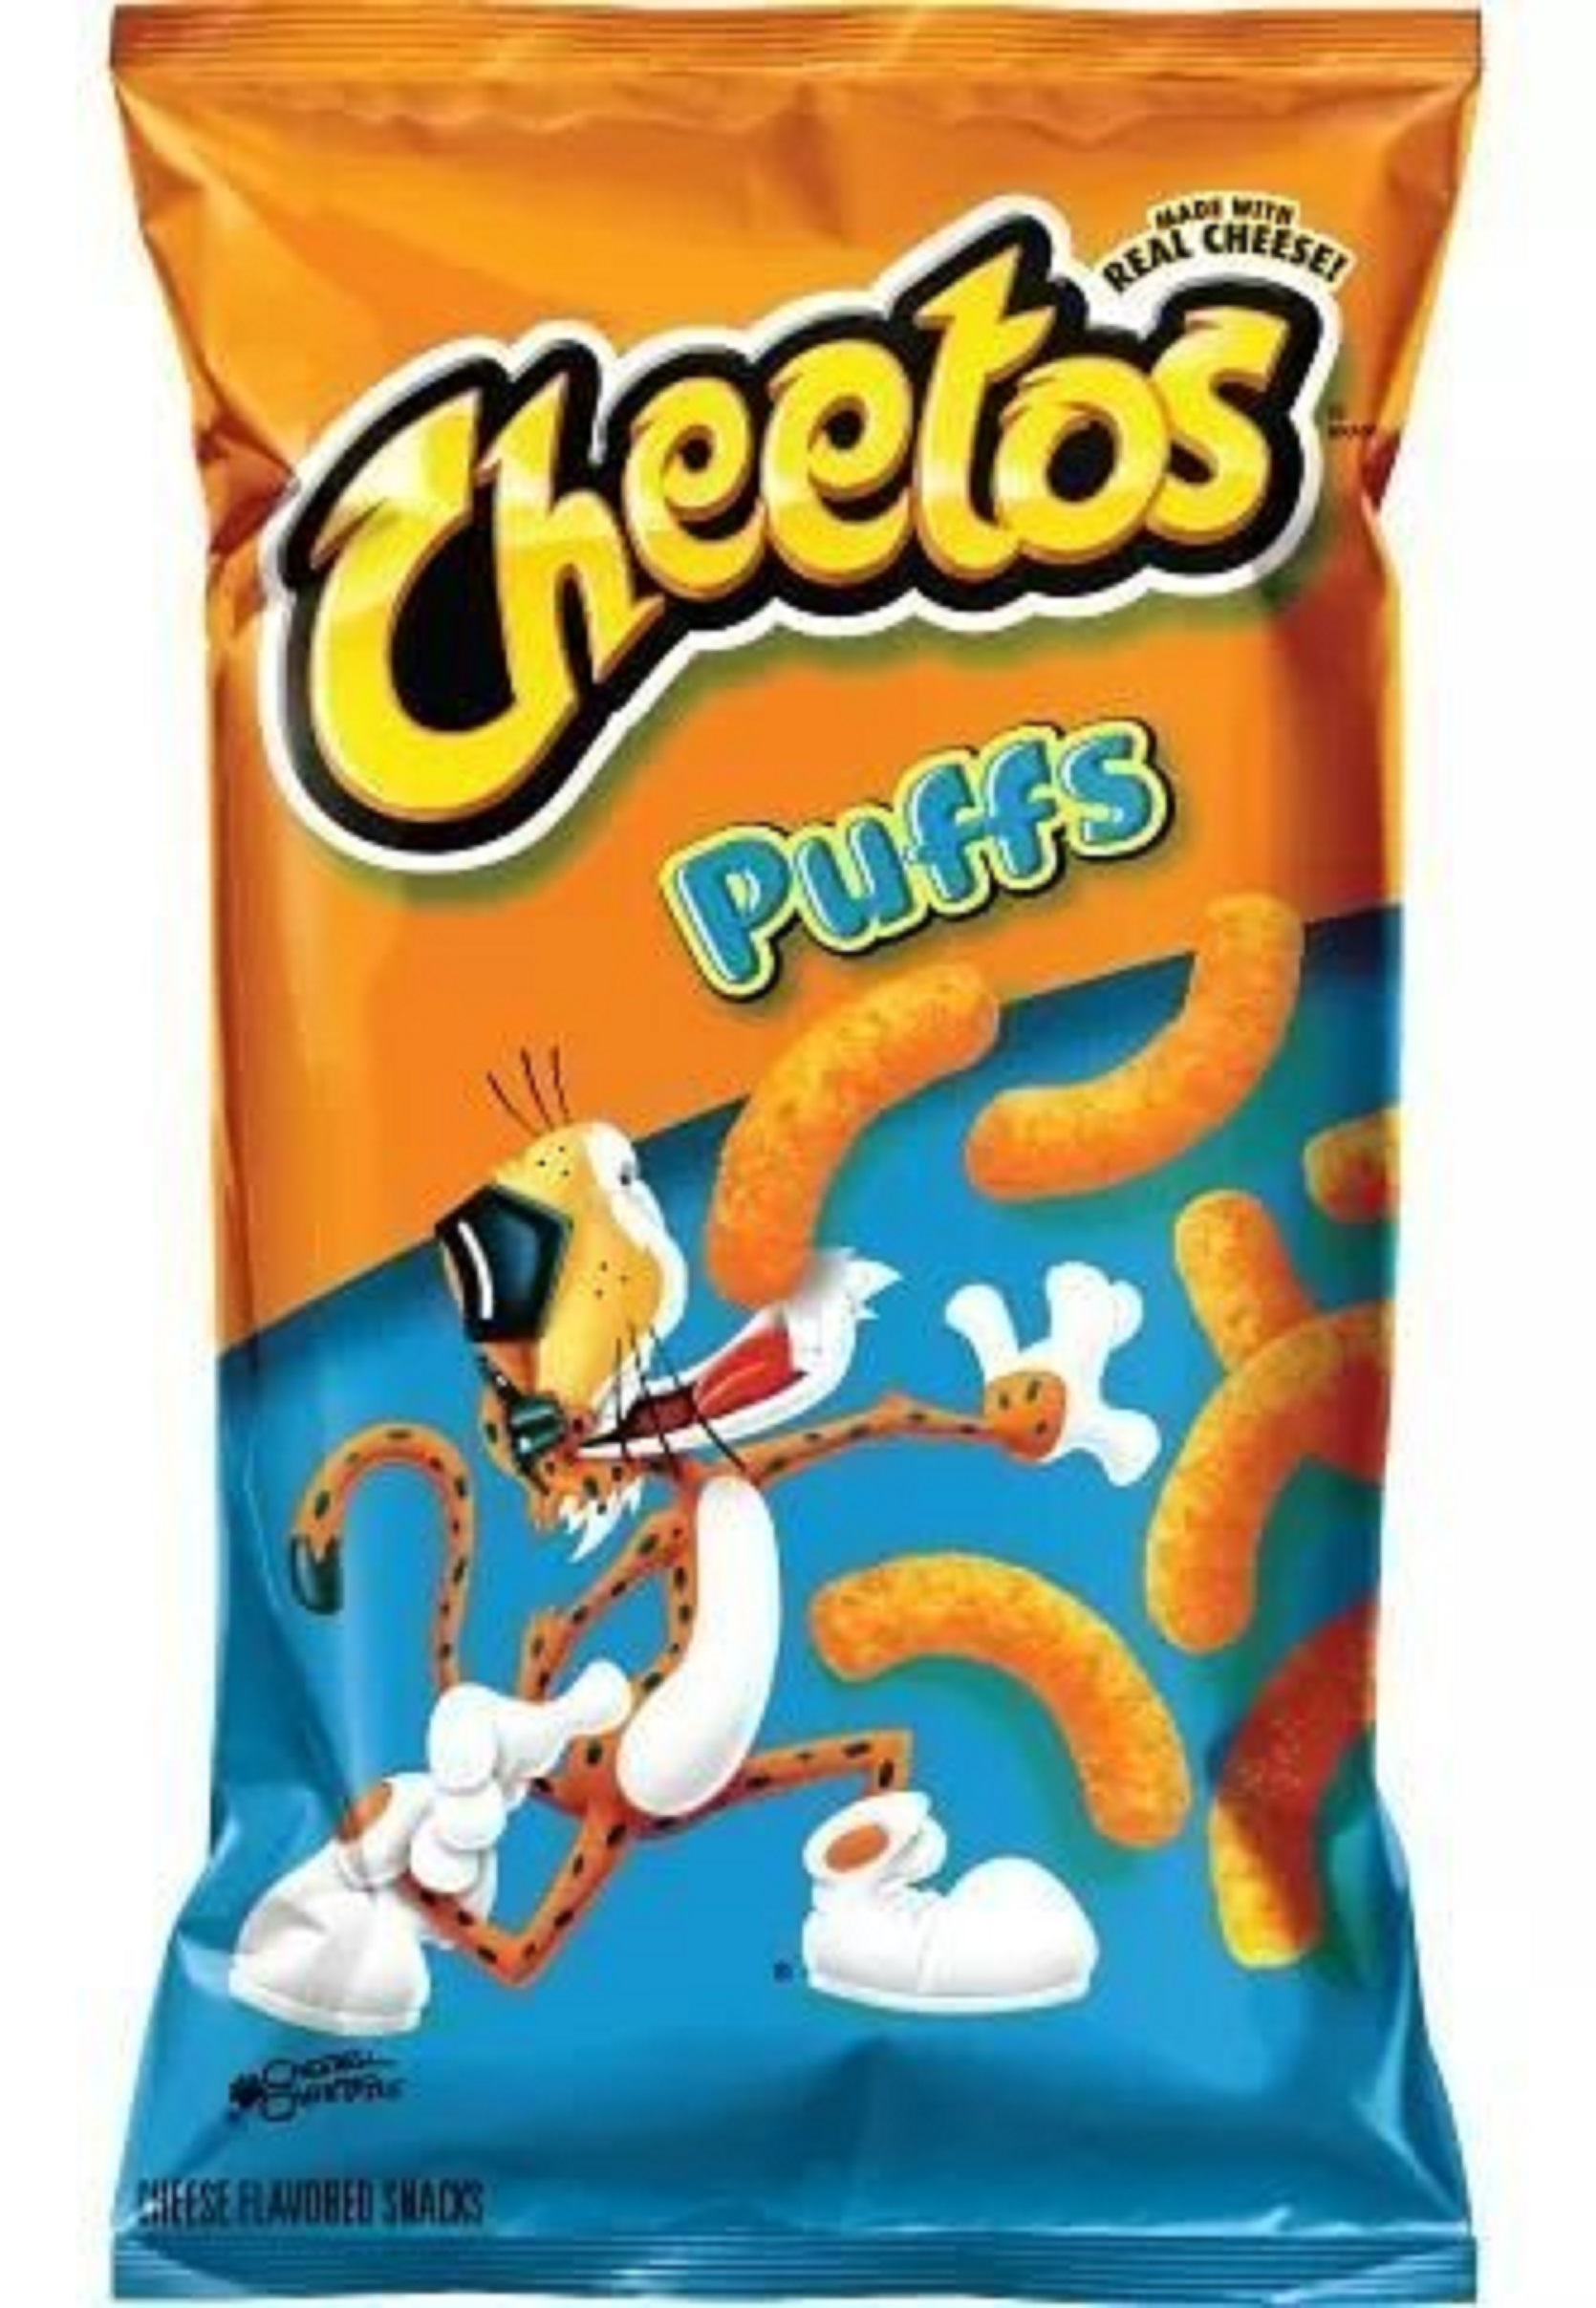 Cheetos Puffs Cheese Flavored Snacks, 3.375 oz Bag - Walmart.com